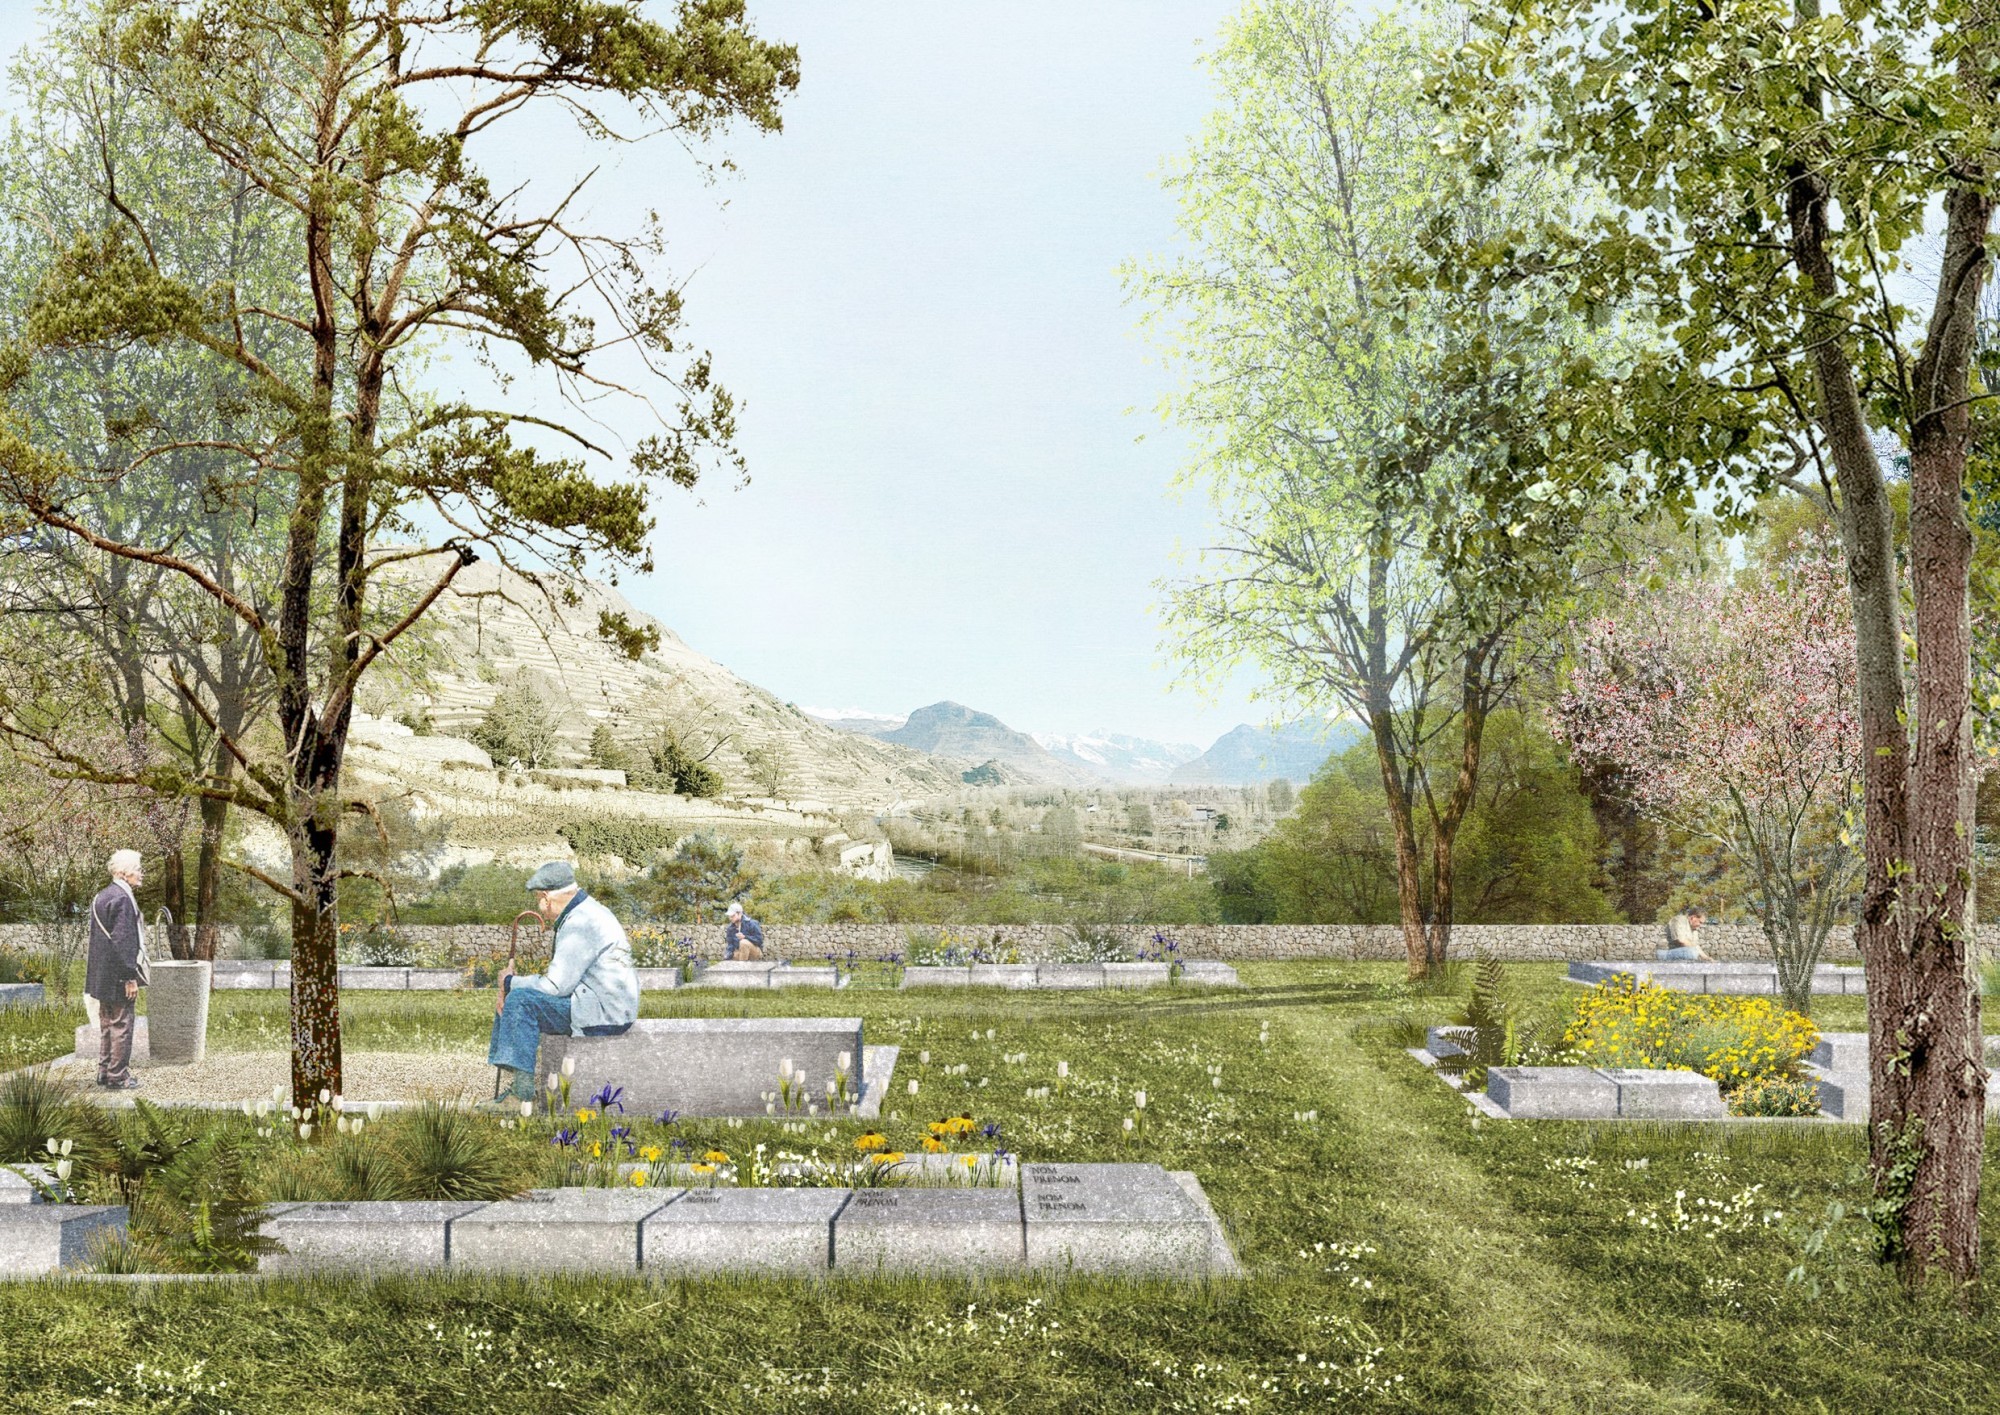 Les travaux d'agrandissement du cimetière de la Platta à Sion débuteront au printemps 2023 pour une mise en exploitation en 2024.